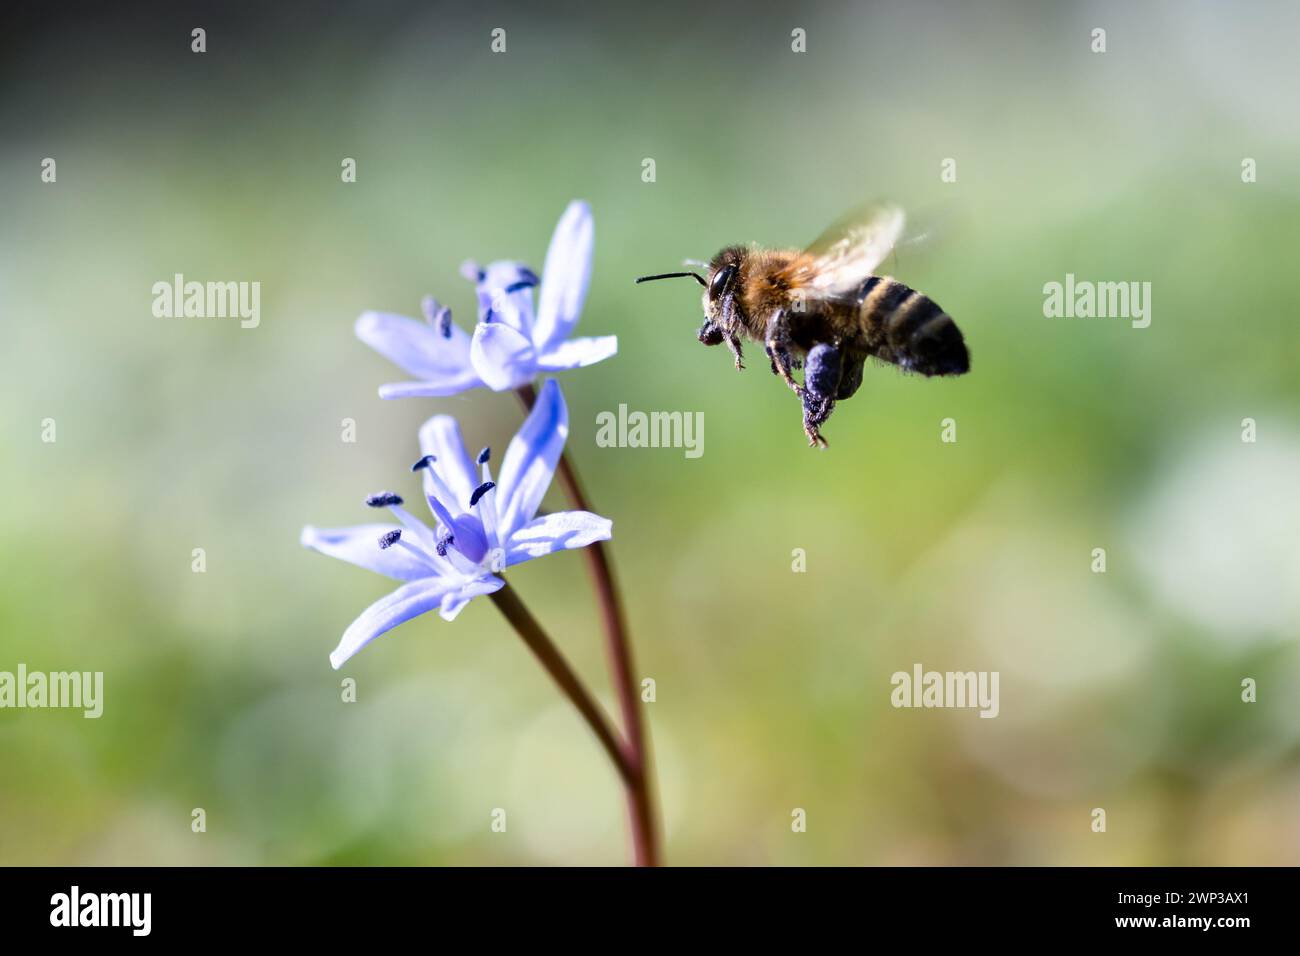 Un'ape volante che raccoglie polline dal fiore selvatico blu sul prato primaverile. Fotografia macro Foto Stock